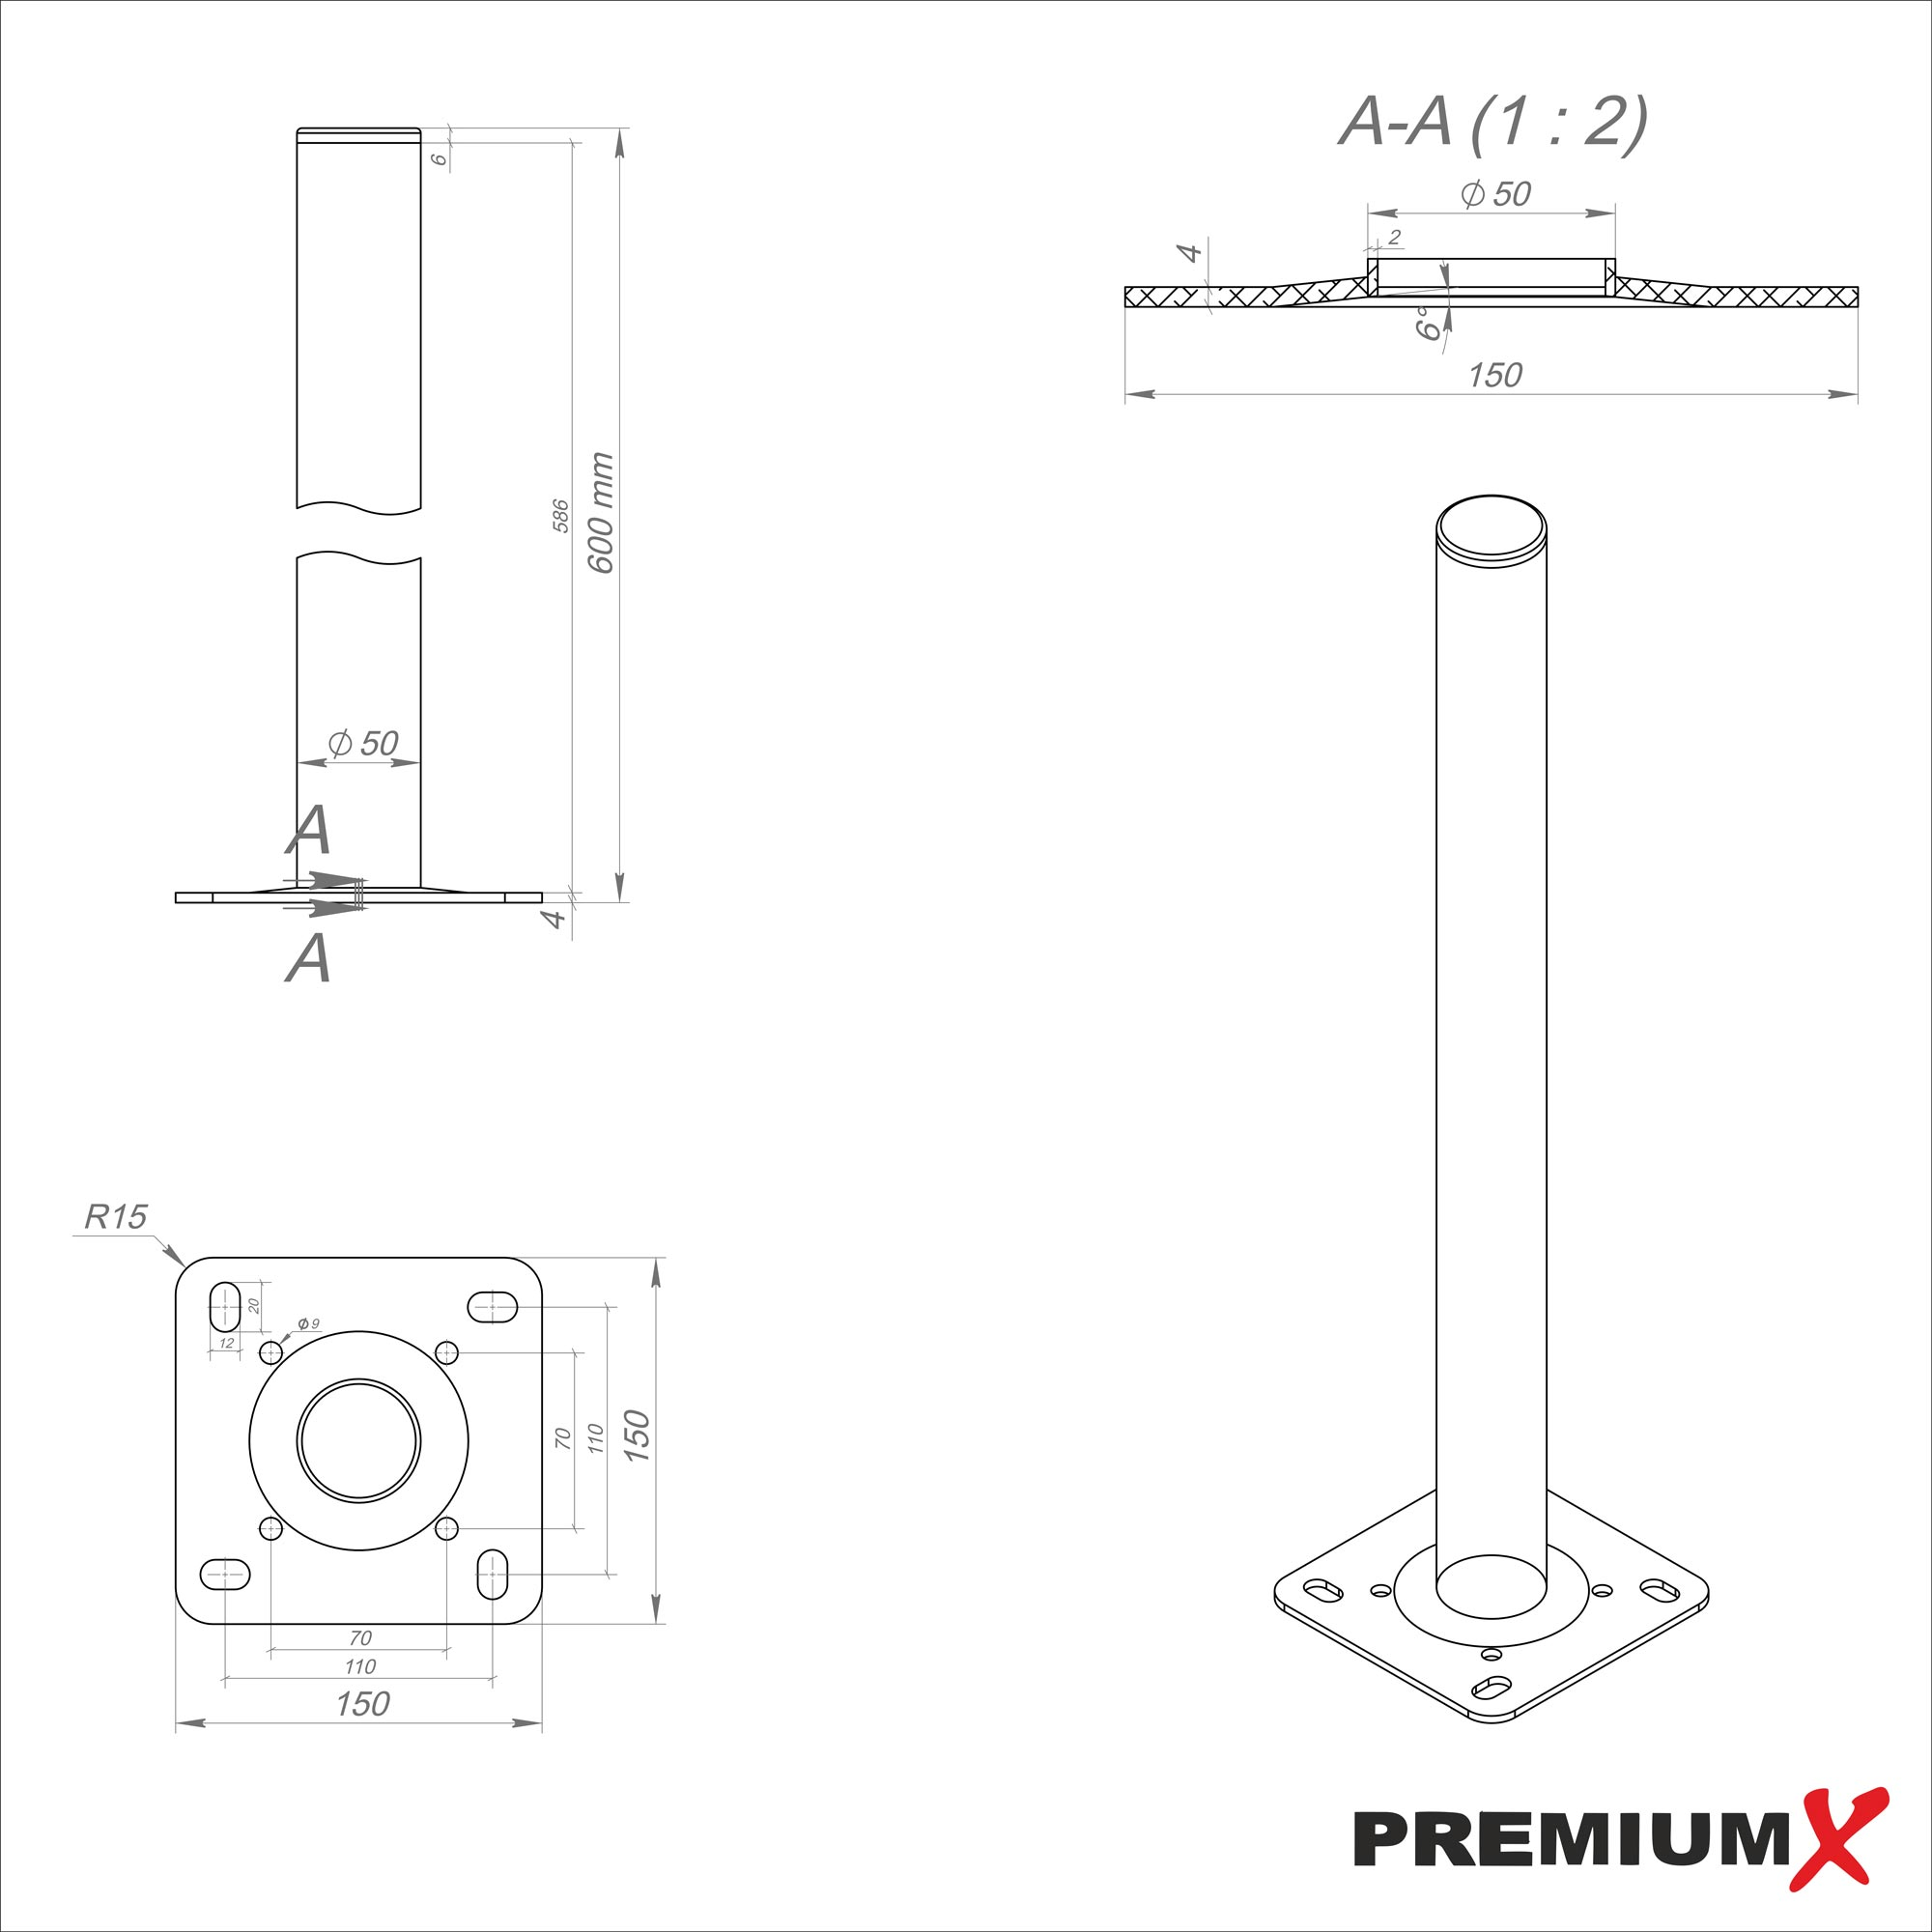 PREMIUMX 60cm Ø SAT Silber Montage Standfuß Aluminium Mastfuß Schraubensatz Flachdach Antennenmast Standfuß, Ständer 50mm